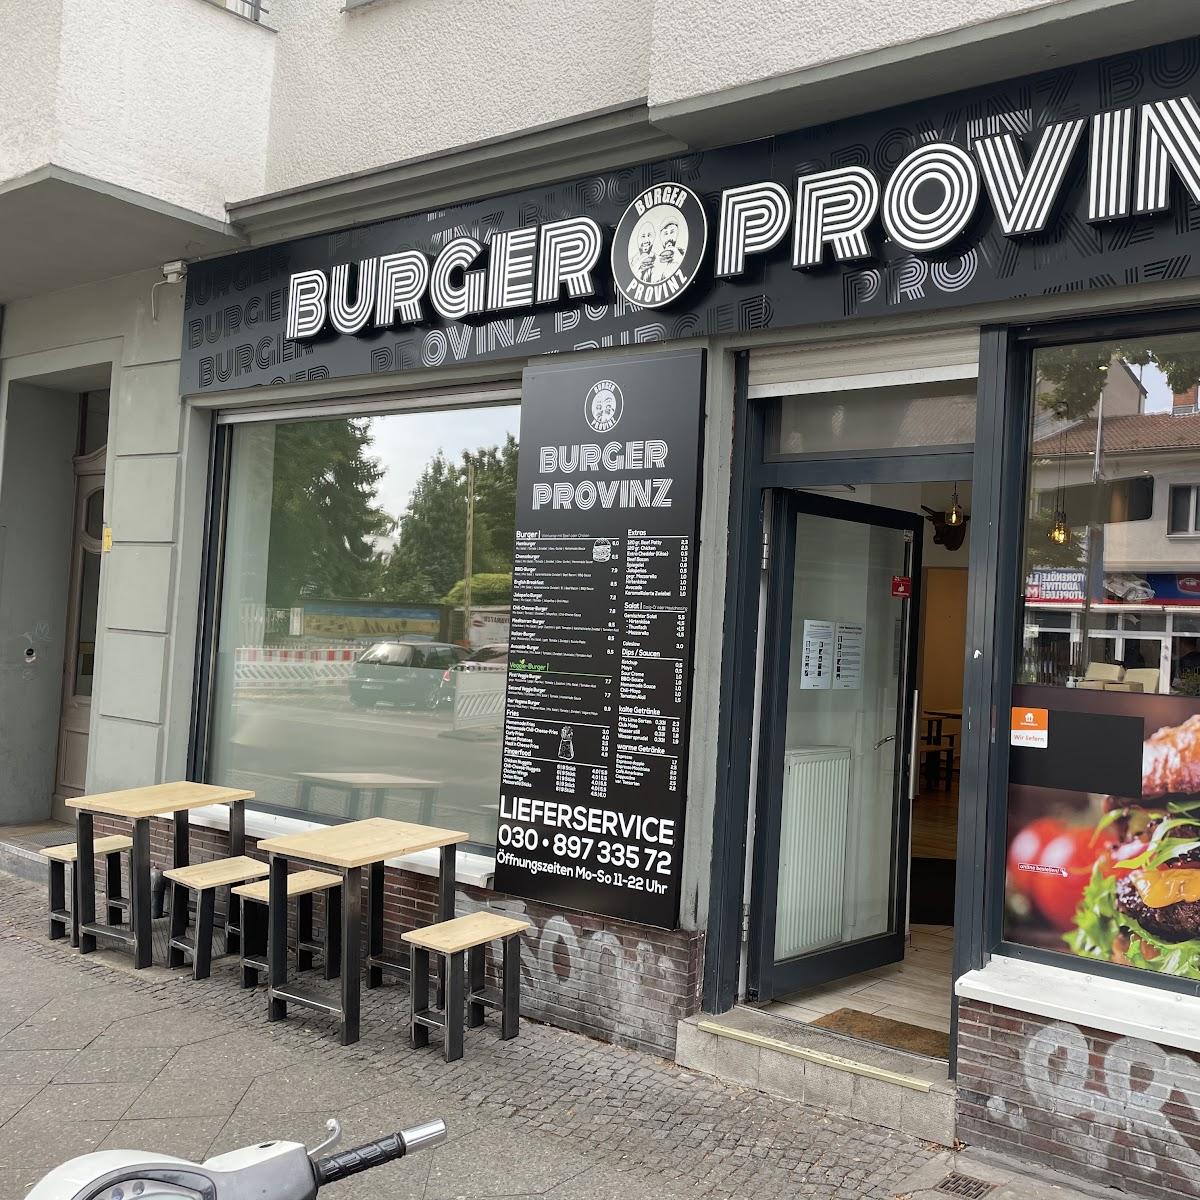 Restaurant "Burger Provinz" in Berlin